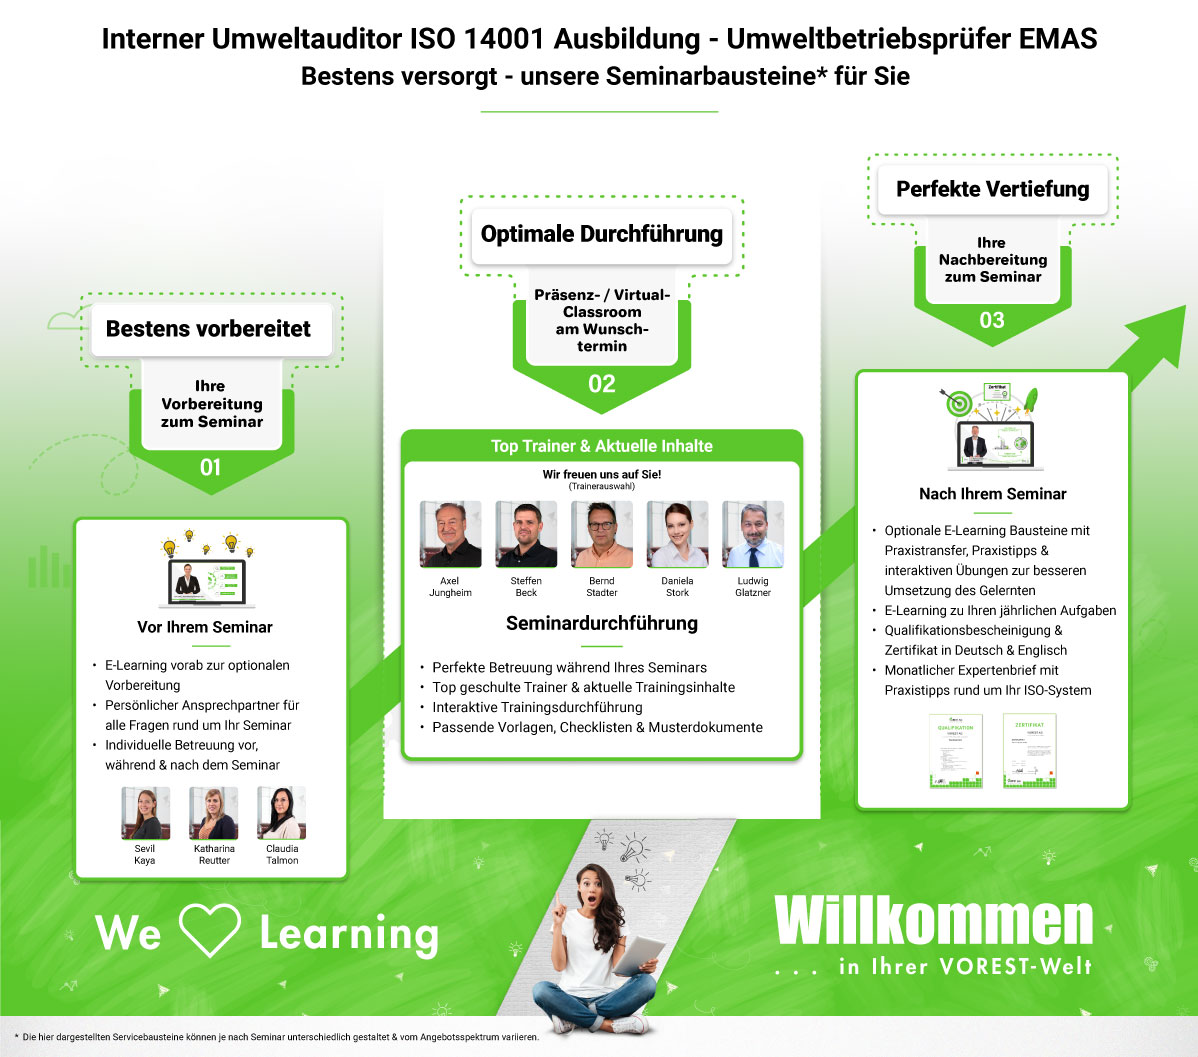 Interner Umweltauditor ISO 14001 Ausbildung - Umweltbetriebsprüfer EMAS